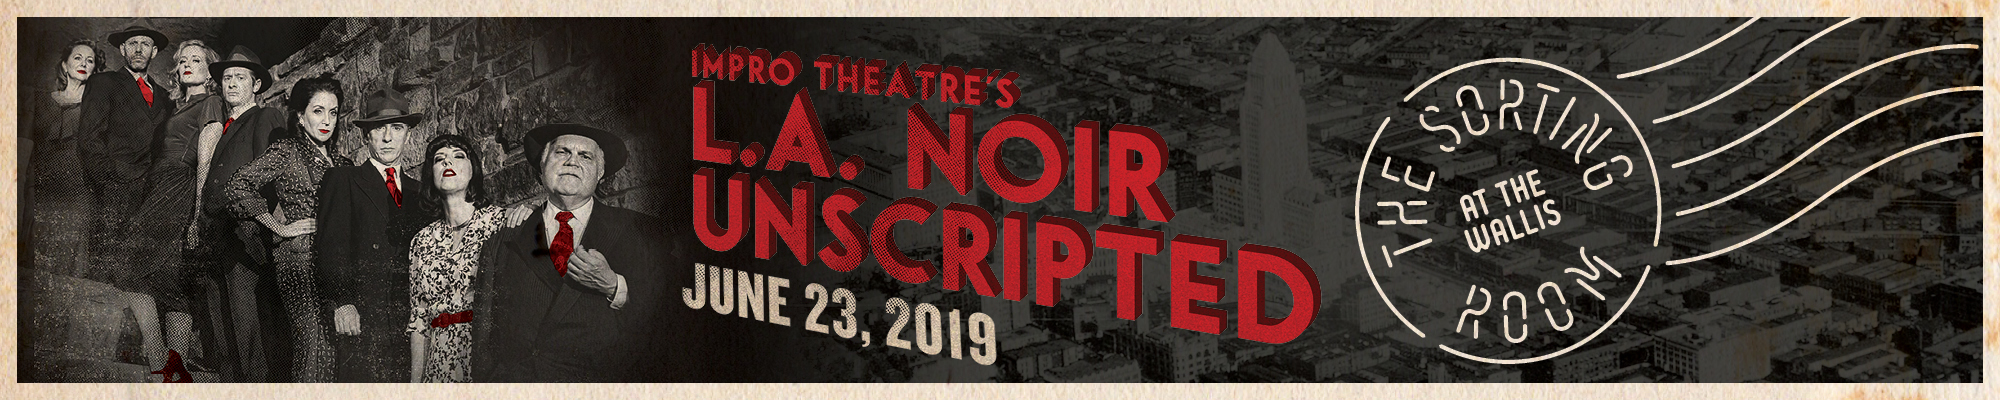 Impro Theatre's  L.A. NOIR UNSCRIPTED